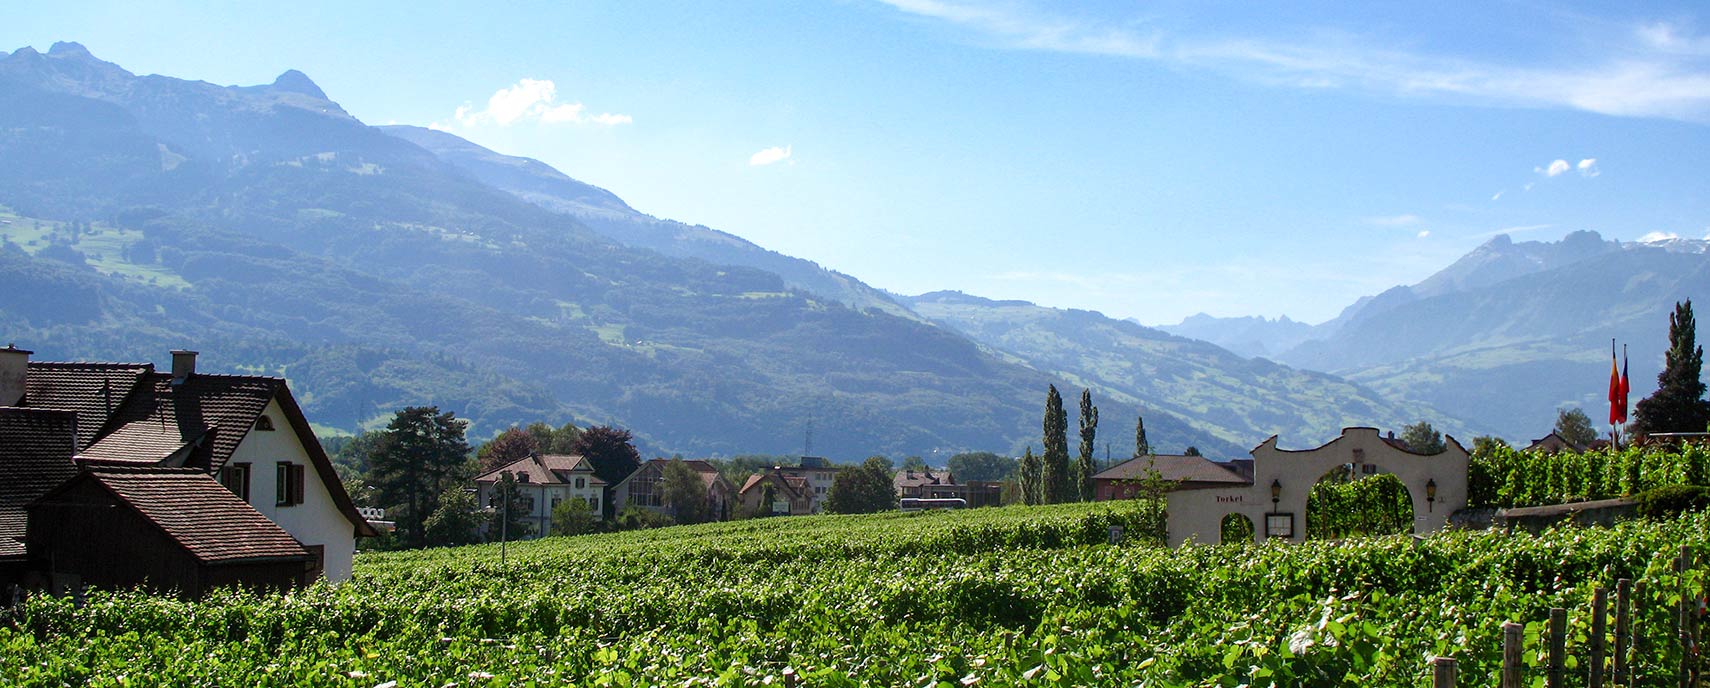 Vineyards in Vaduz, capital of Liechtenstein